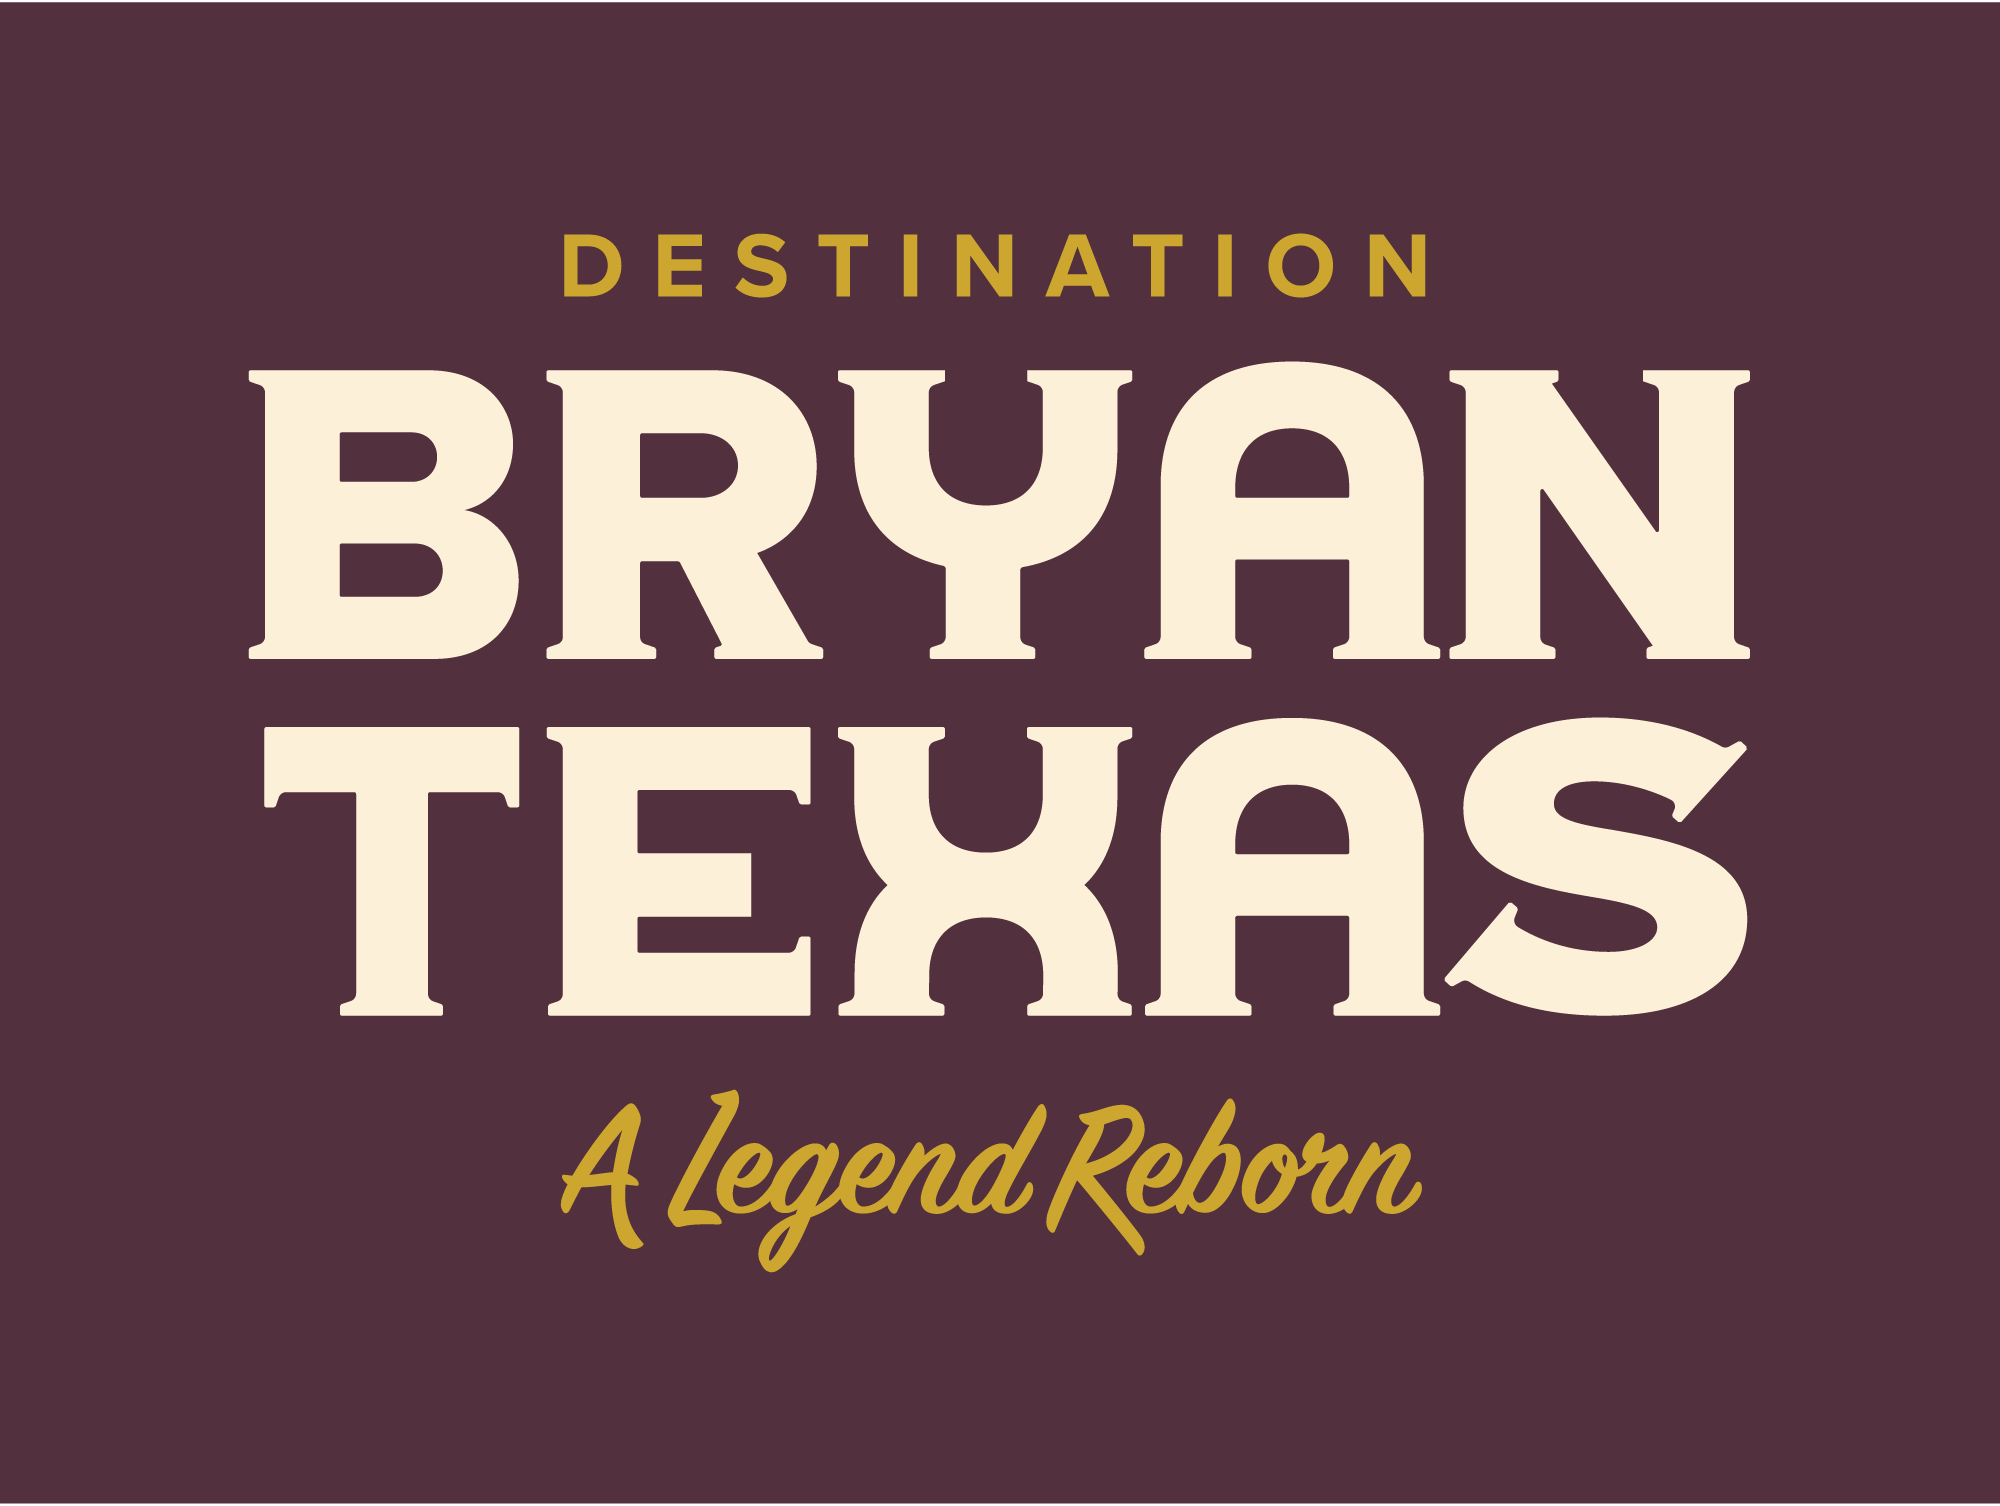 Destination Bryan logo maroon